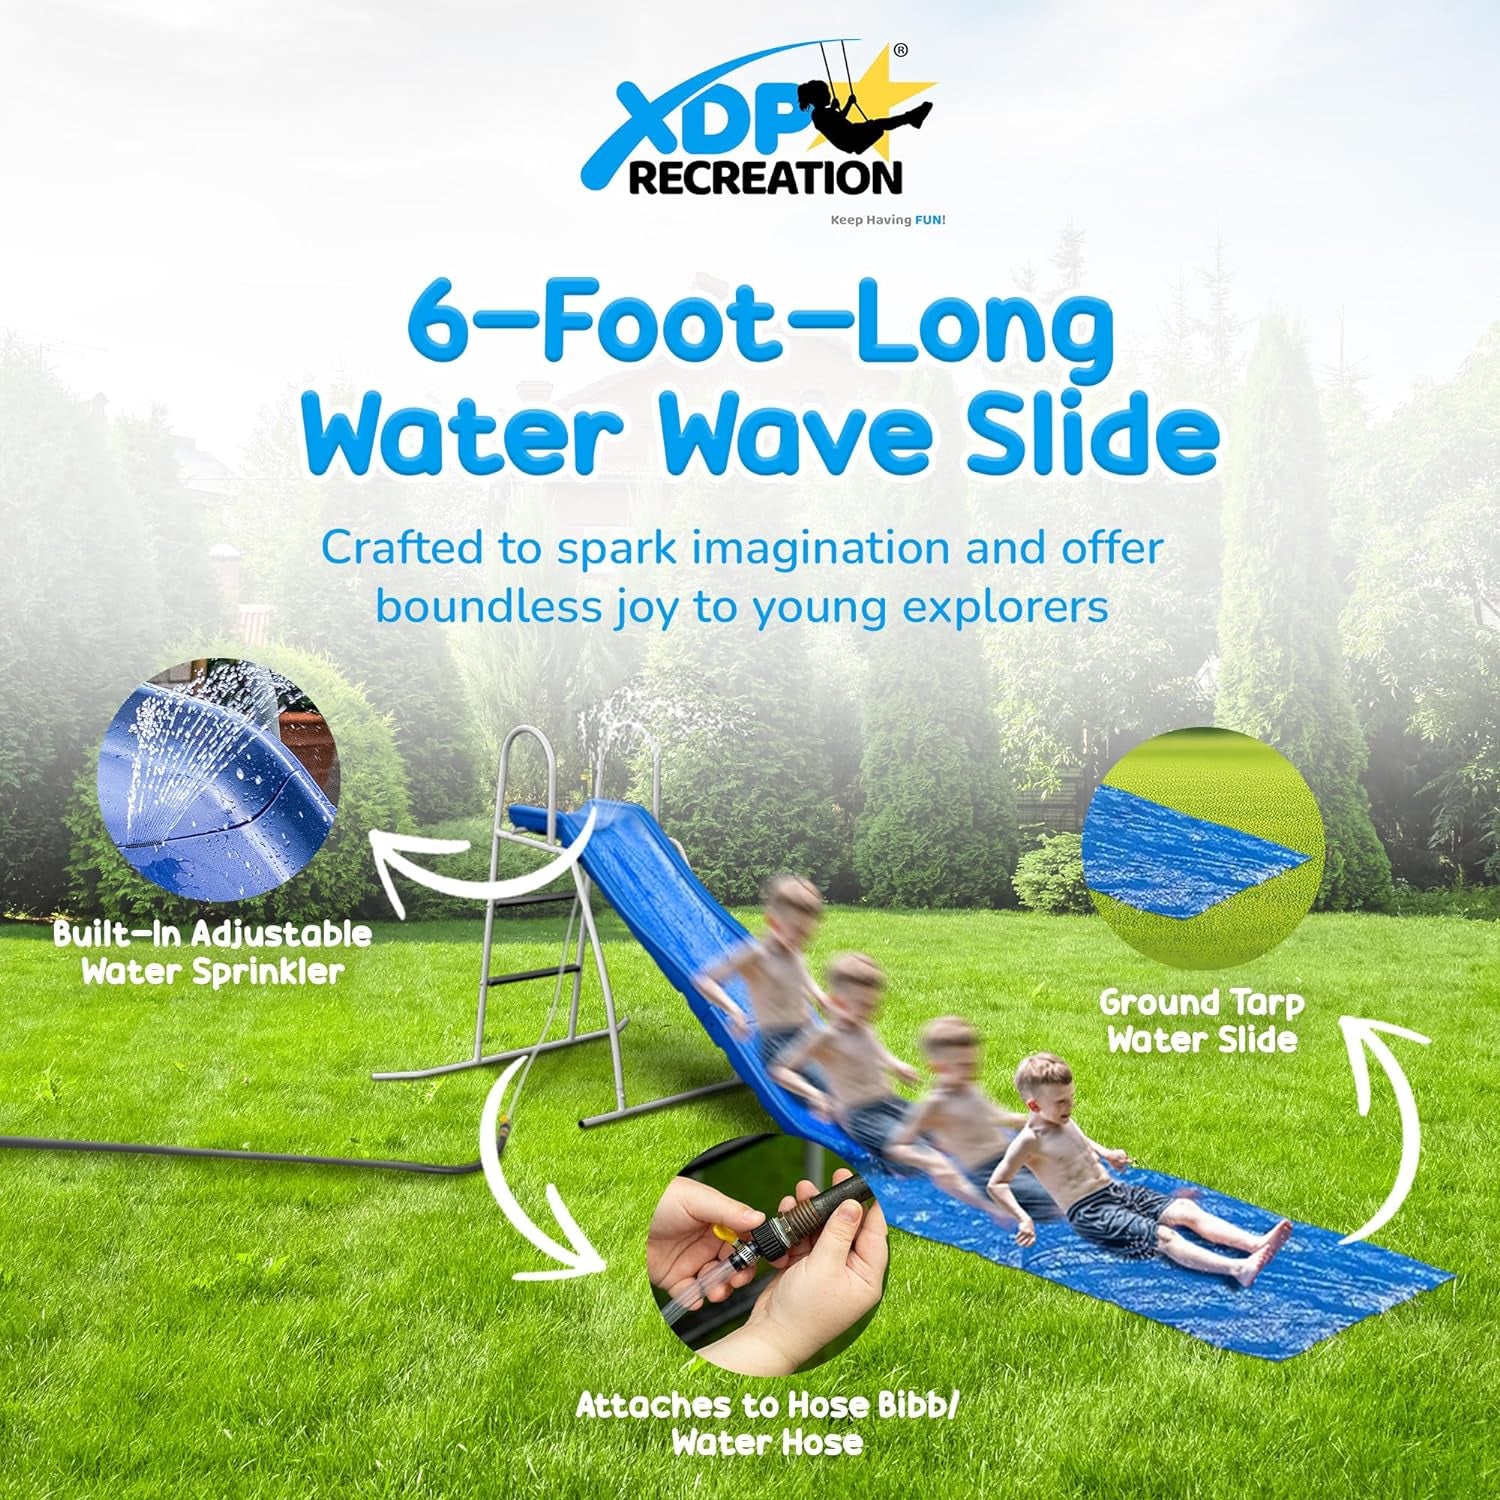 6' Water Wave Slide, Free Standing with Built in Adjustable Water Sprinkler and Bonus Ground Water Slide Tarp by